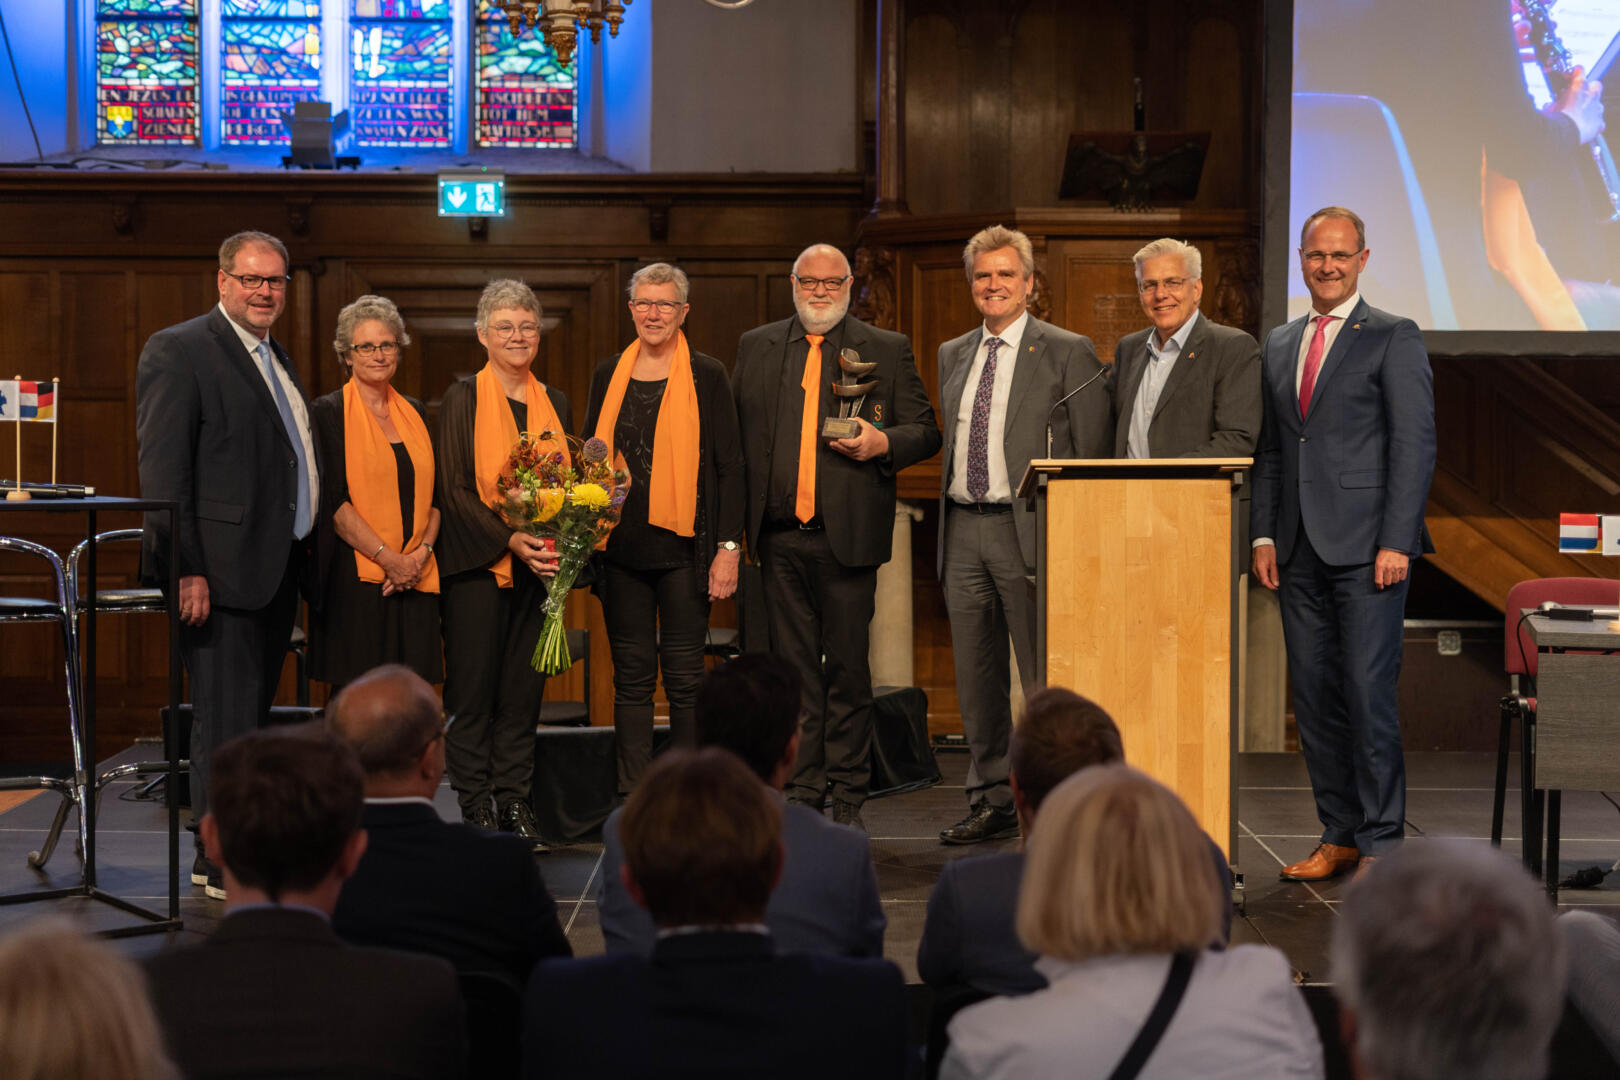 Die Gewinner:innen des People to People EUREGIO-Preises stehen gemeinsam mit vier Vorstandsmitgliedern auf der Bühne. Die Gewinner:innen halten einen Blumenstrauß und den Preis in den Händen.